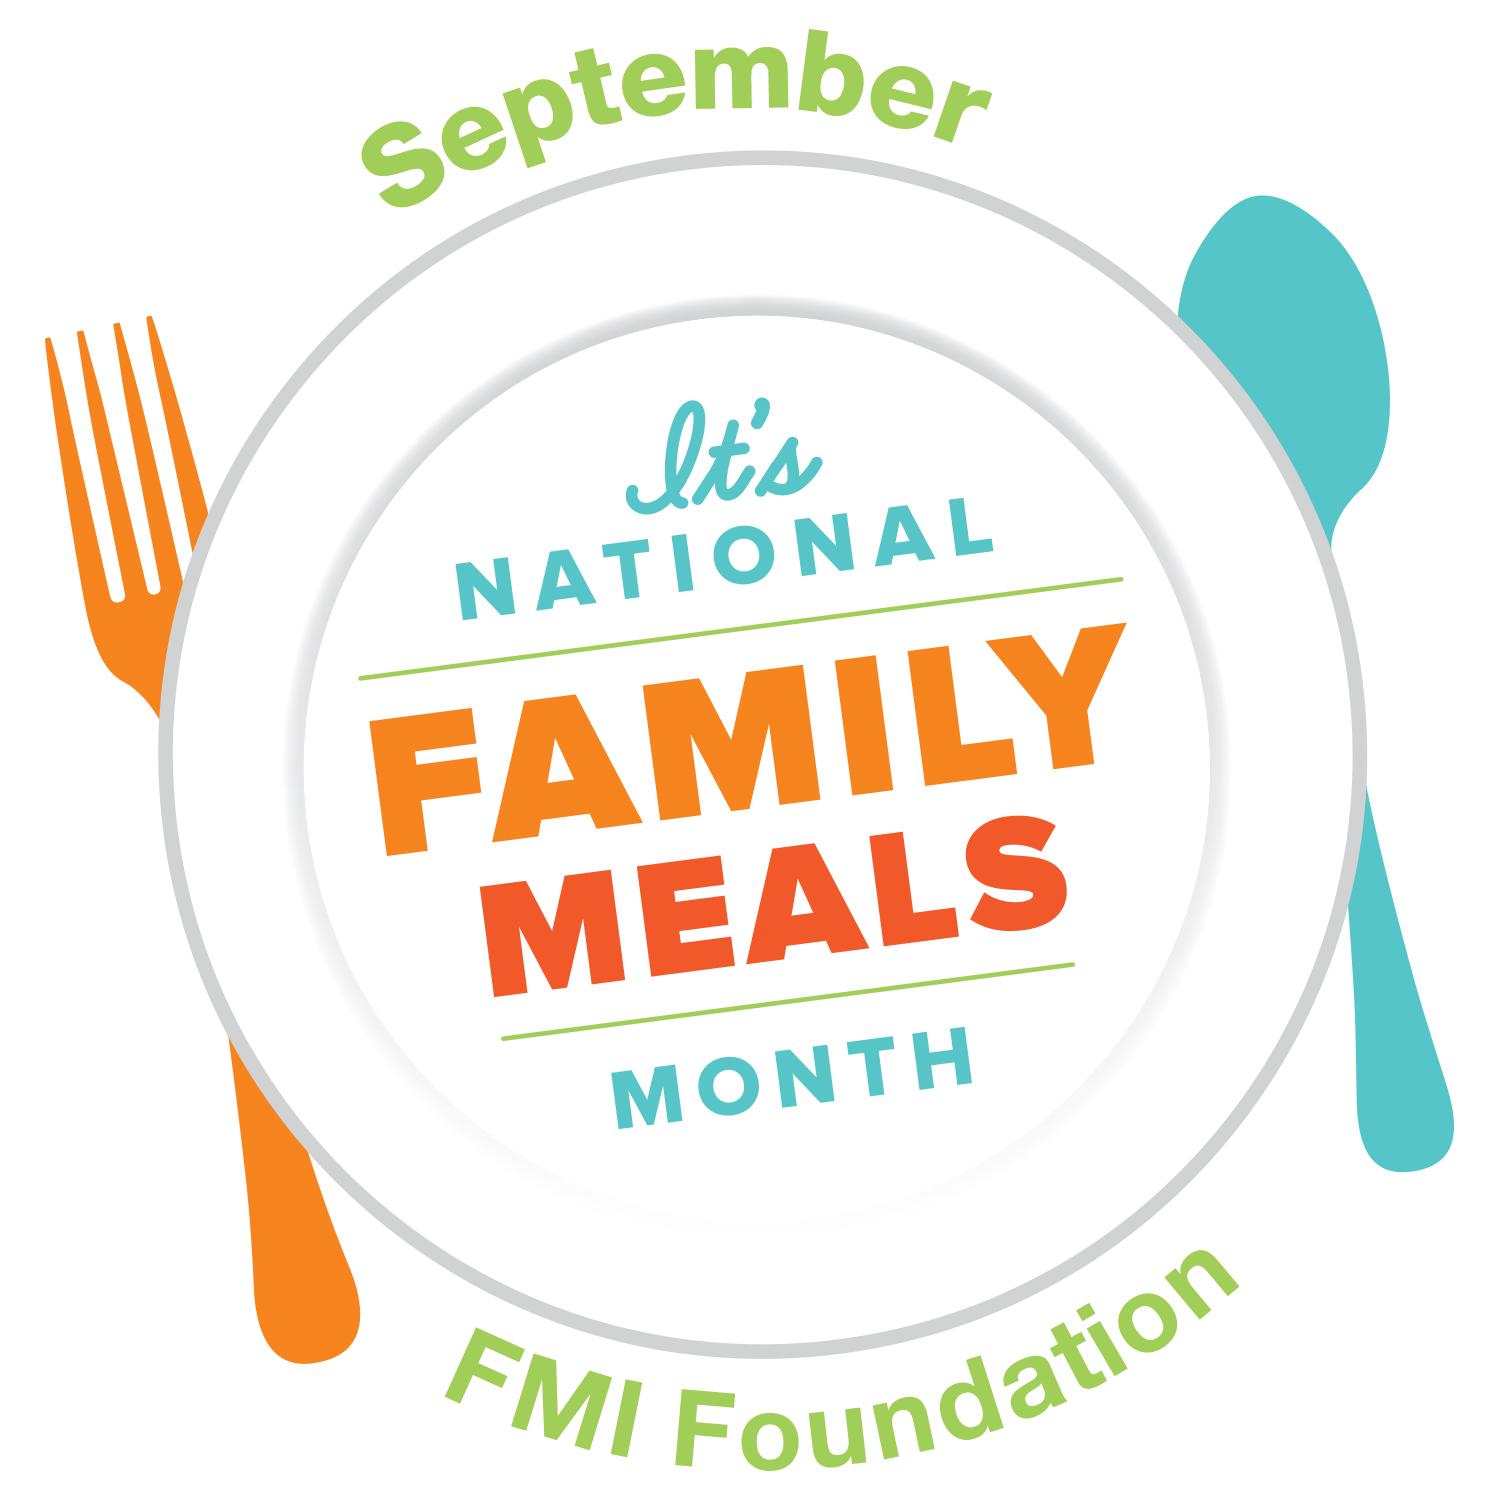 FMI Logo - NFMM logo Sept FMI Foundation | Fight Bac!